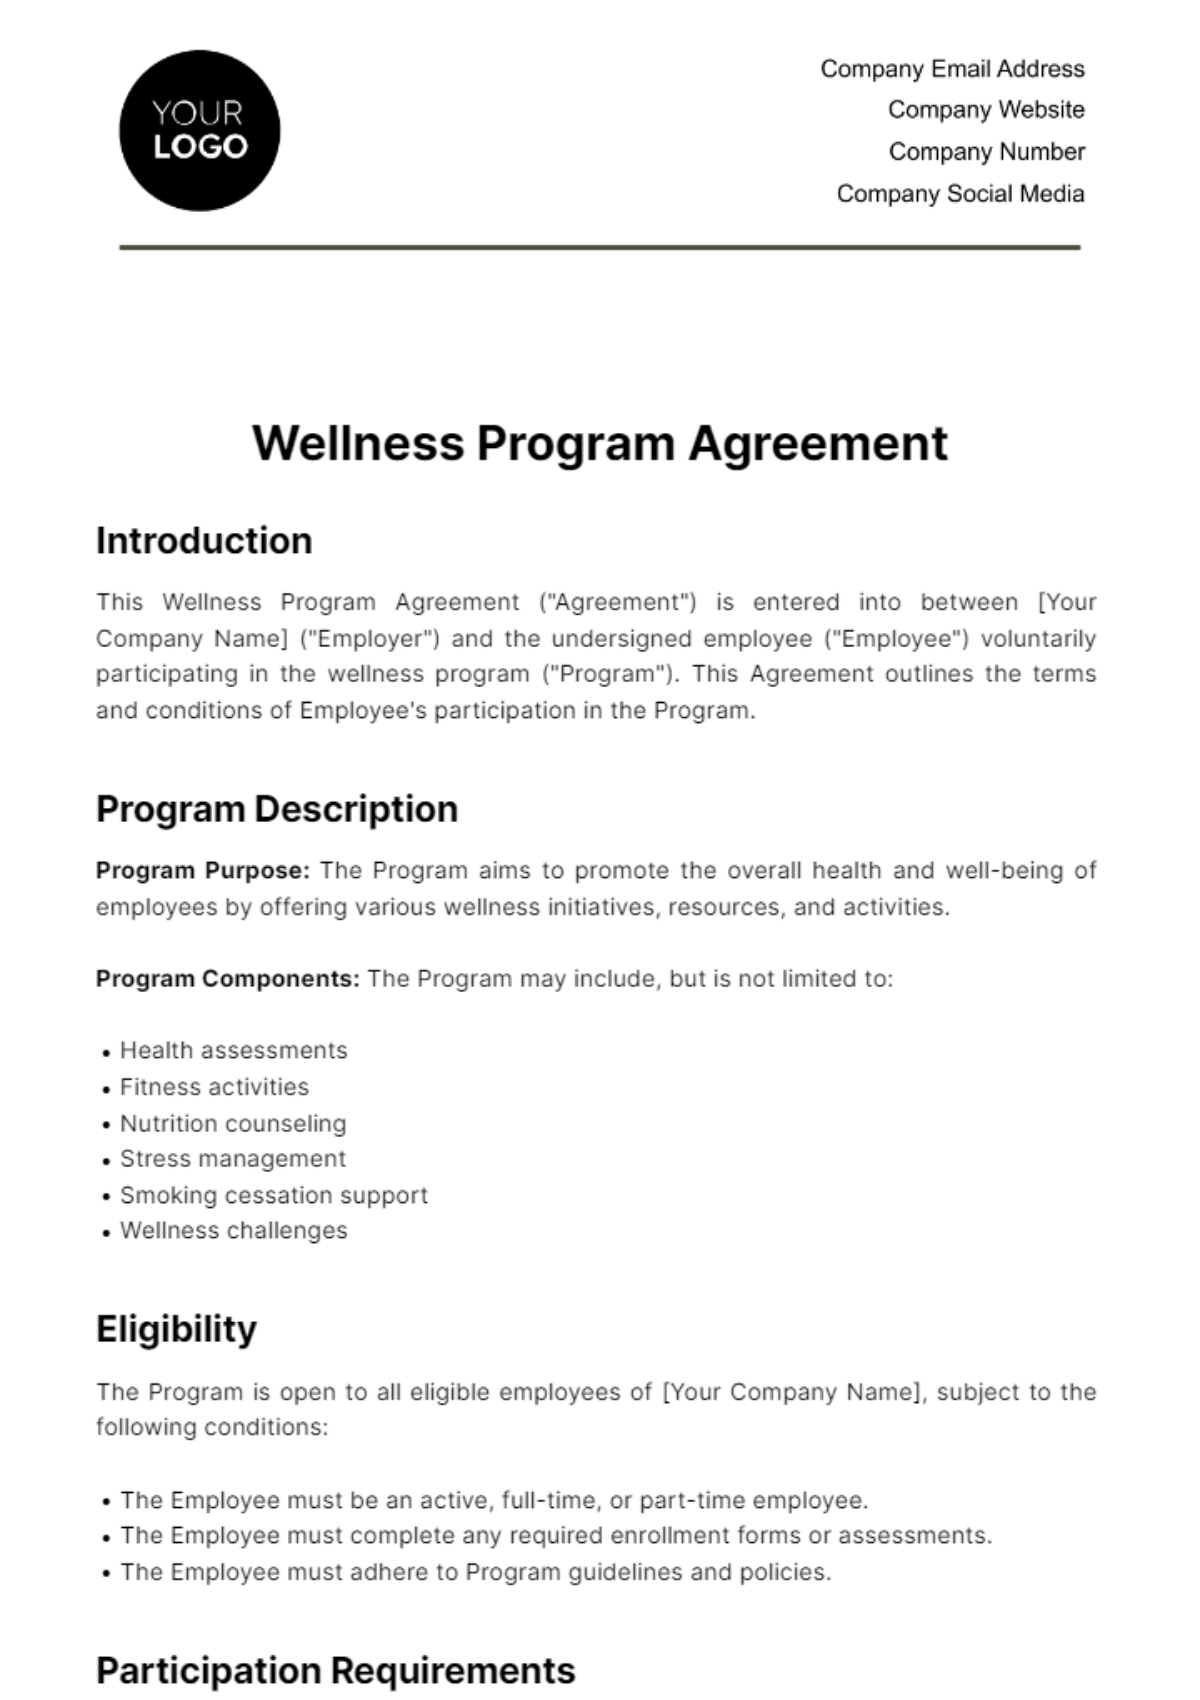 Wellness Program Agreement HR Template